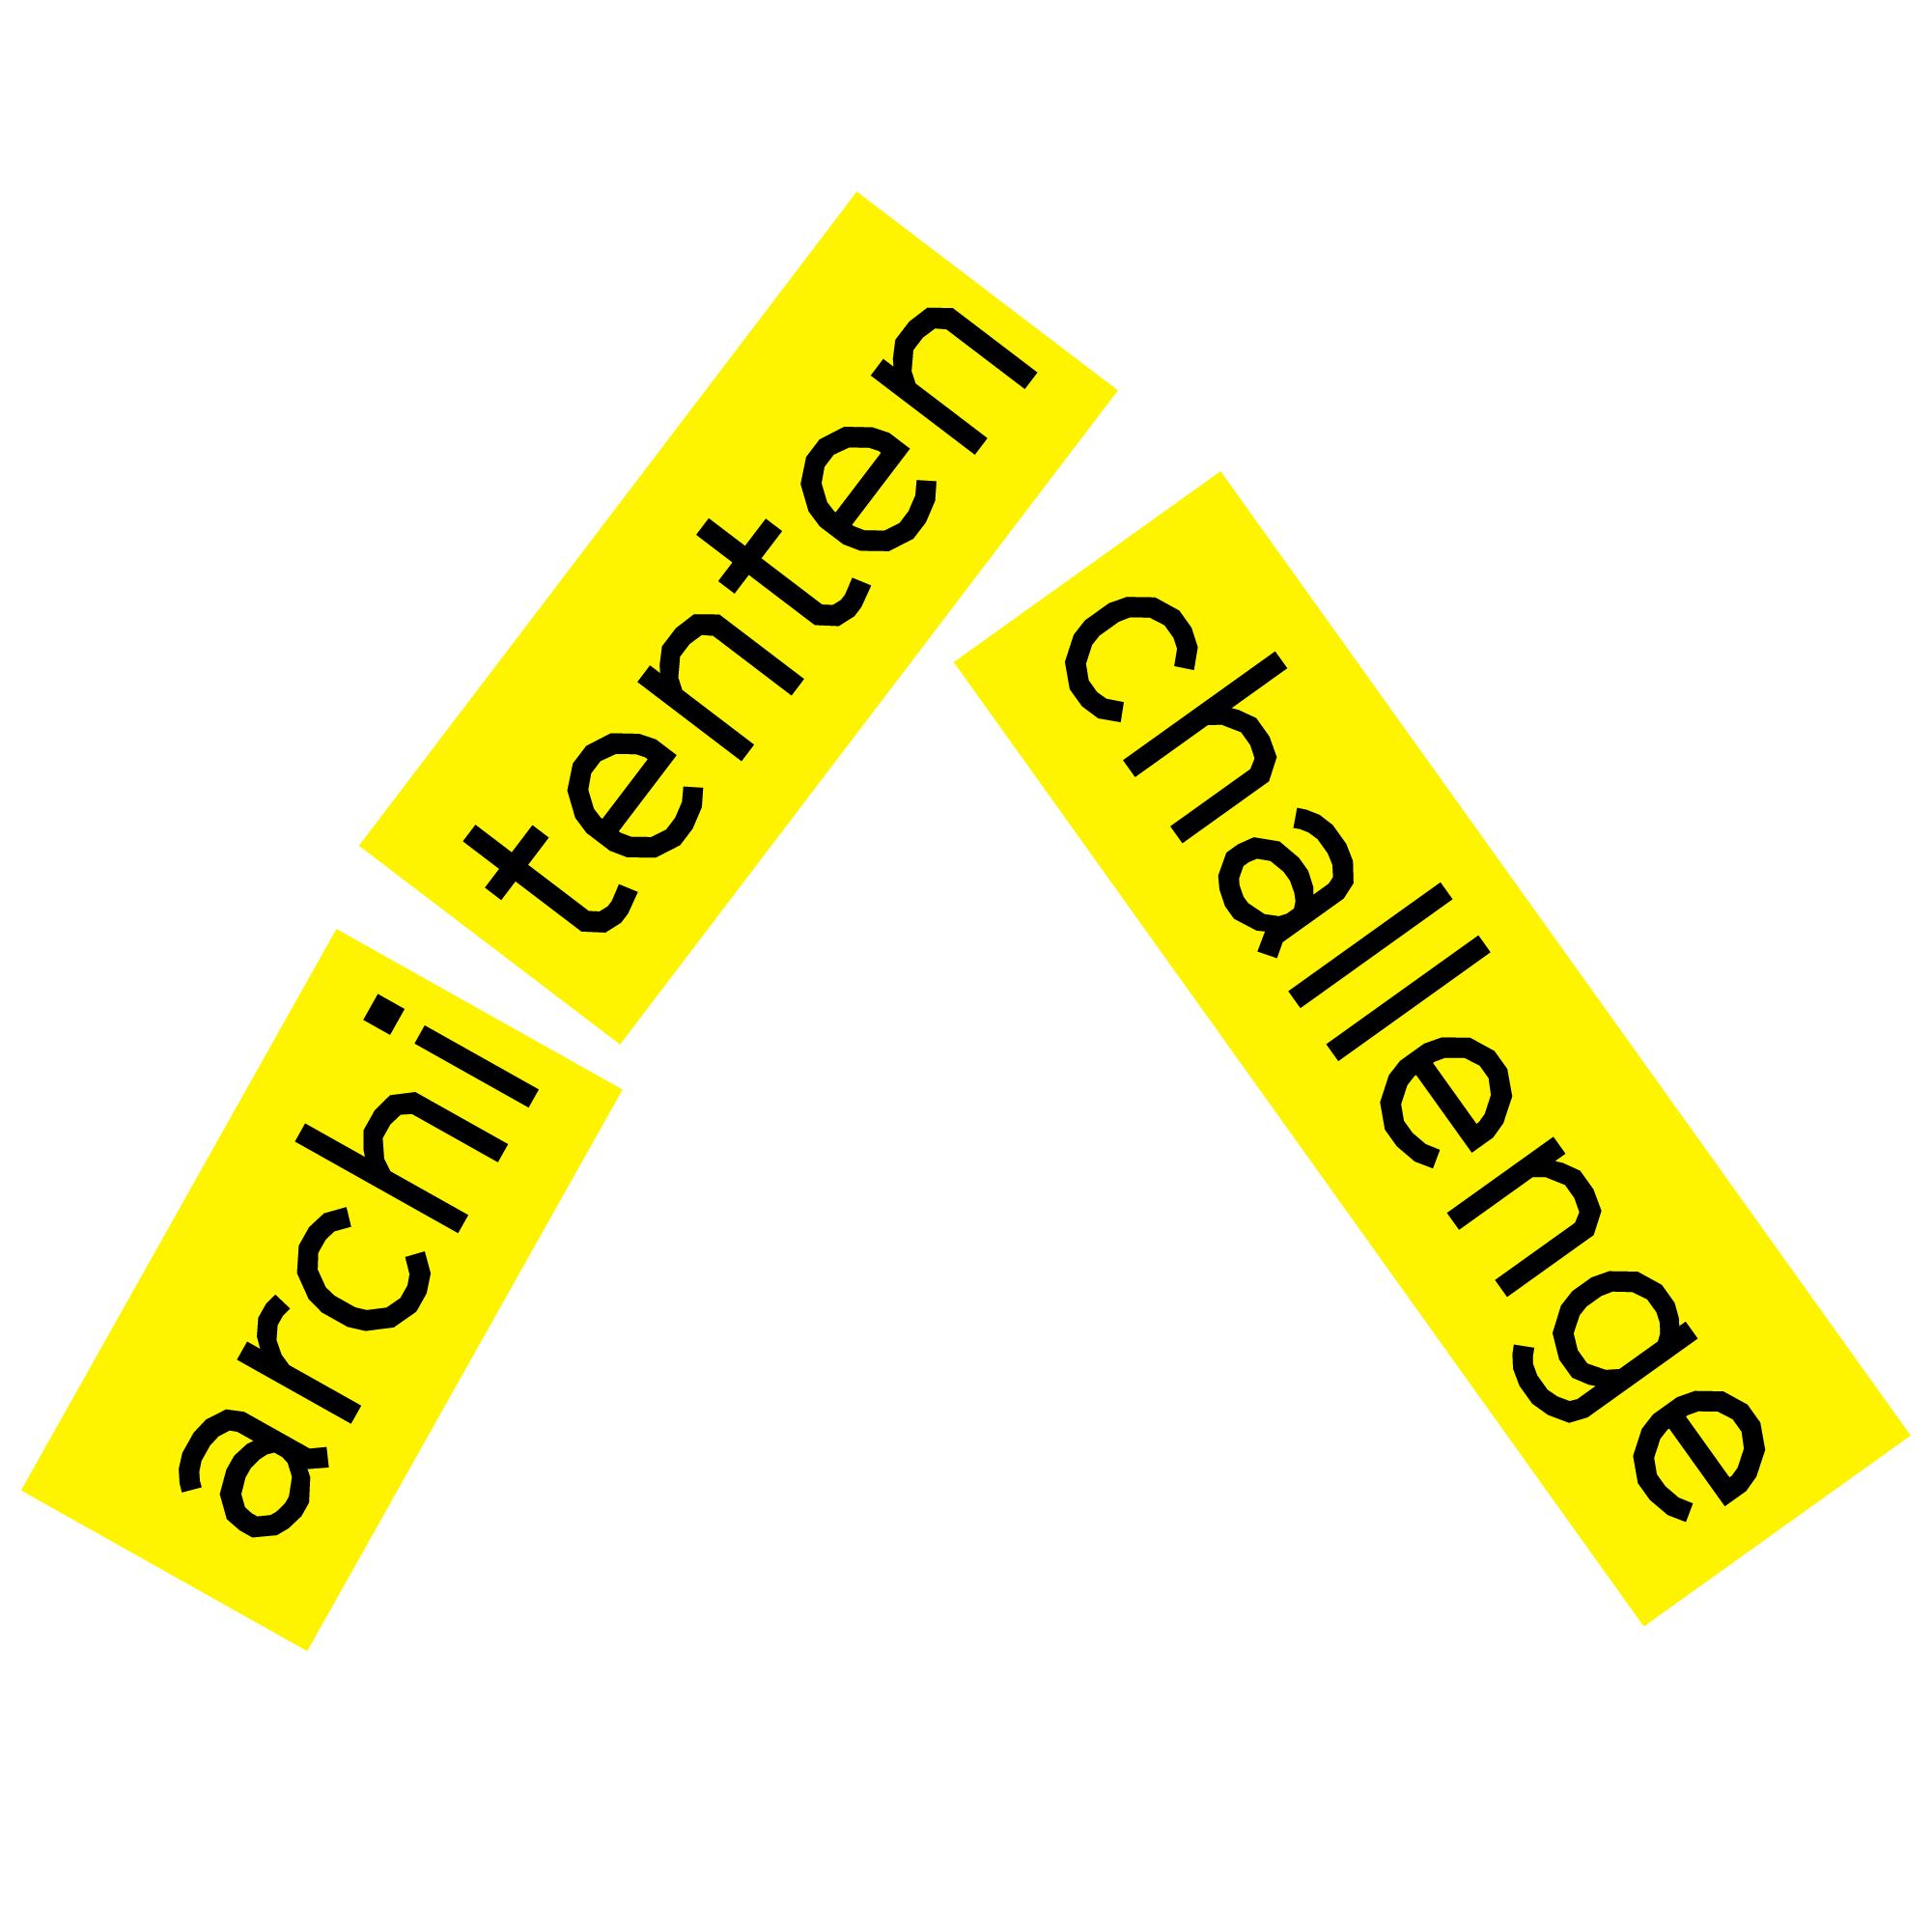 Nominaties ArchiTenten Challenge bekend